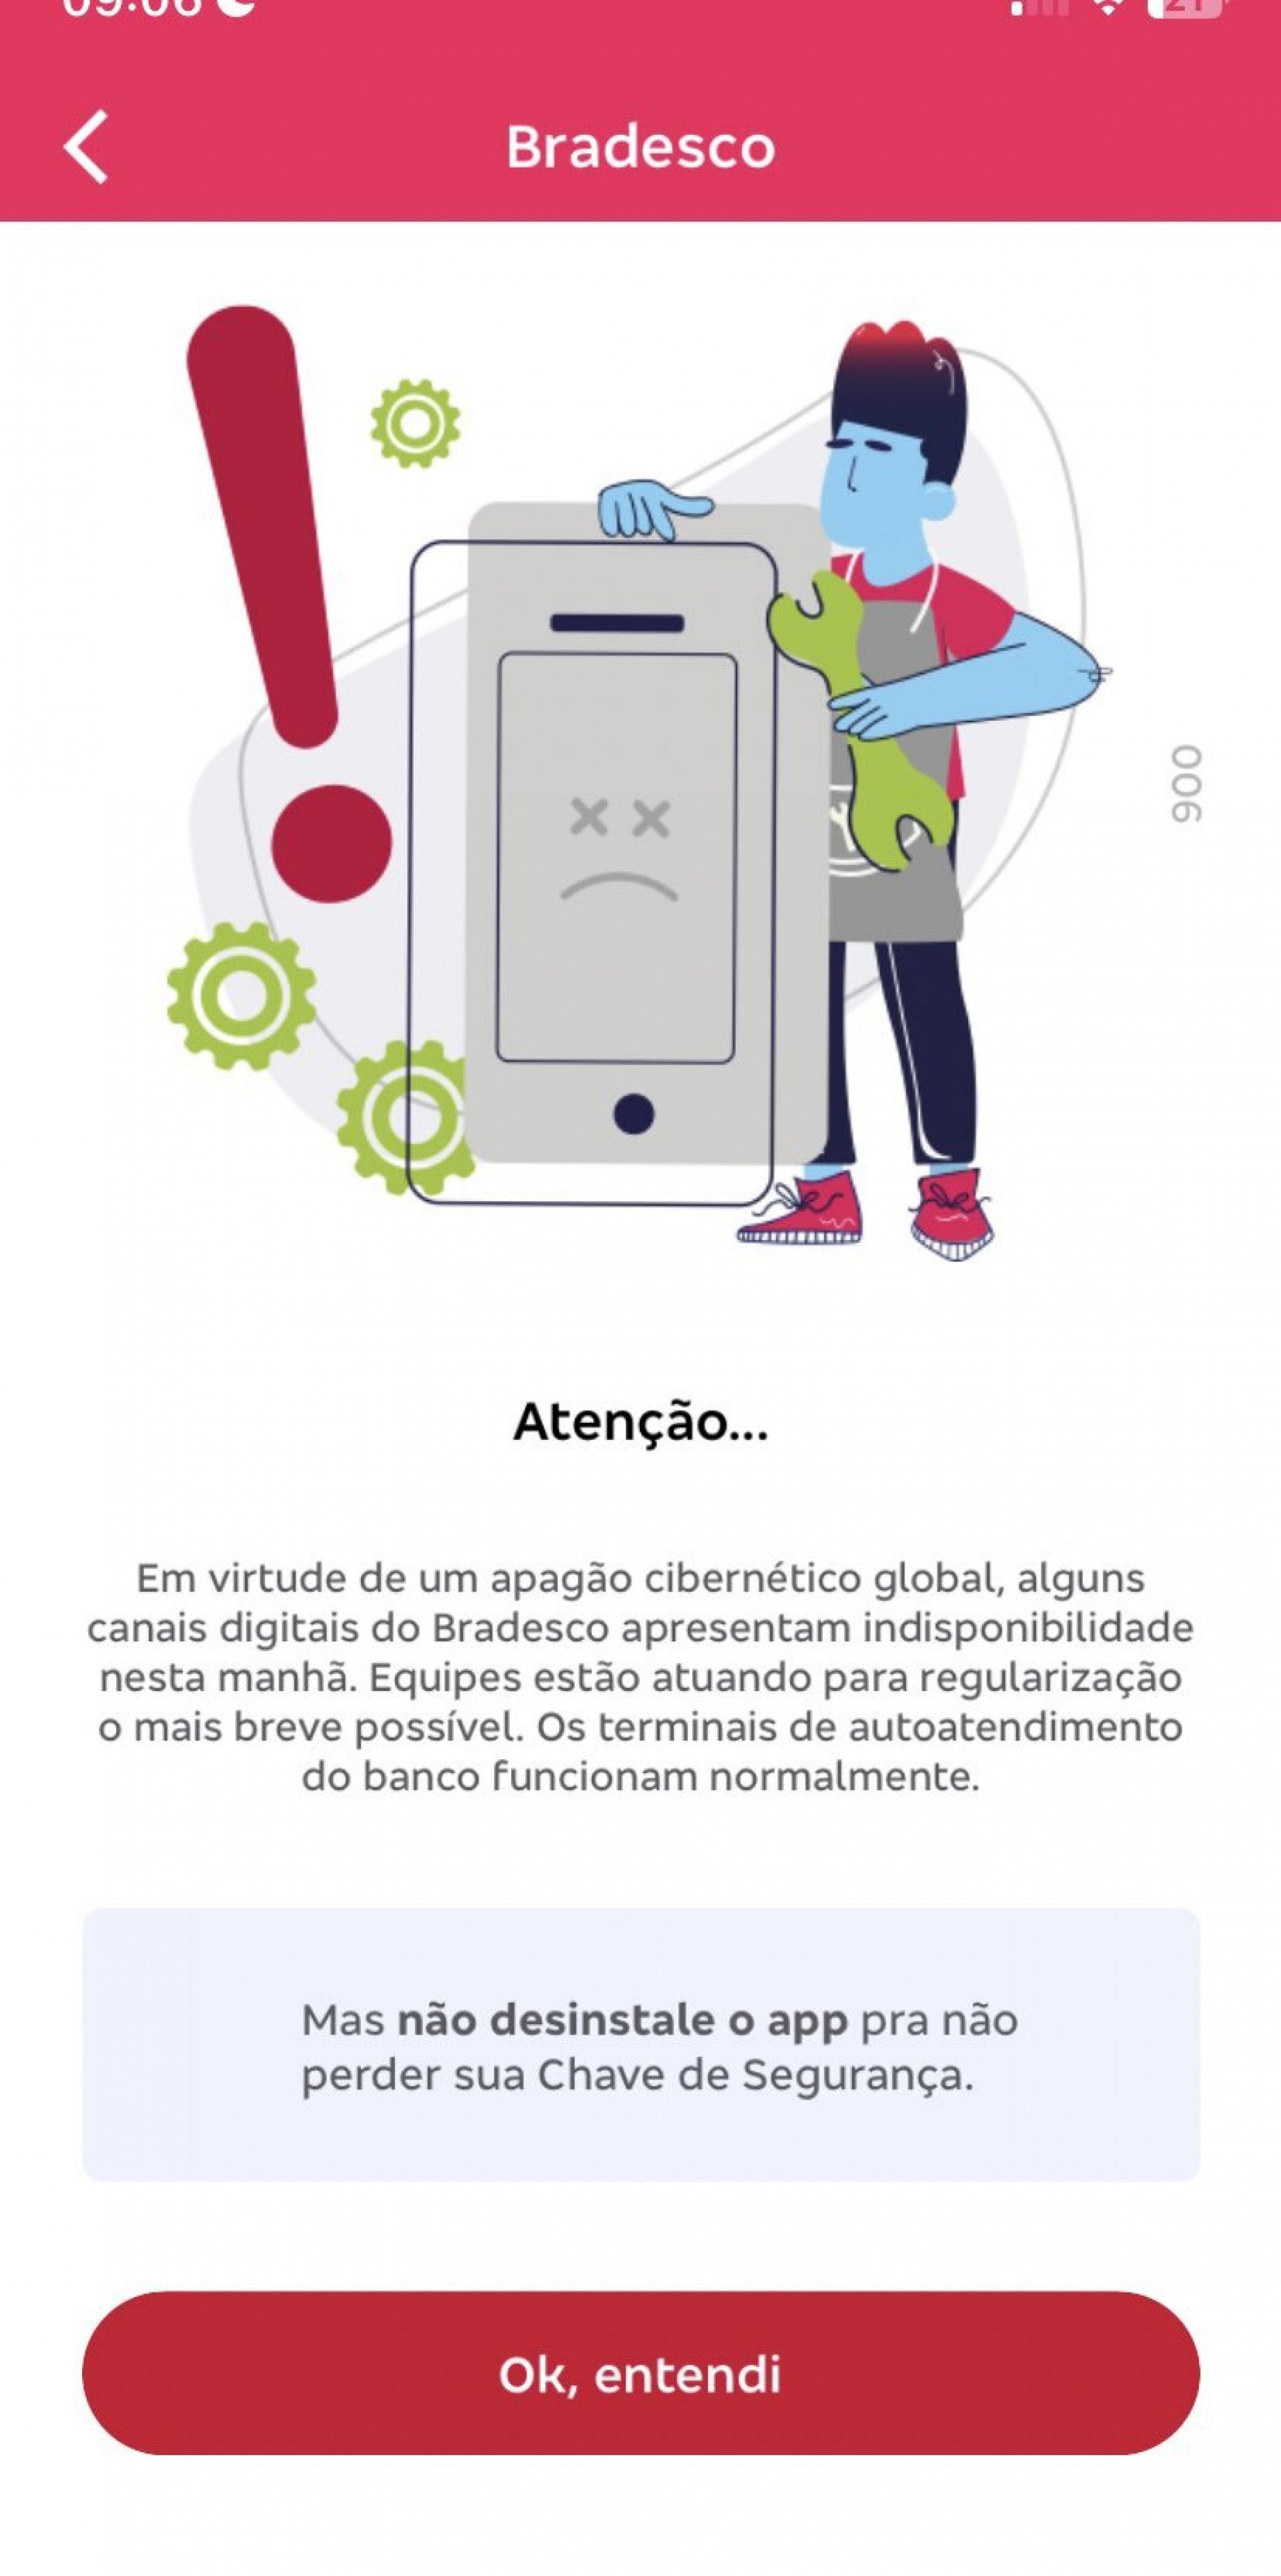 Aviso no app do Bradesco sobre a falha no sistema devido ao apagão nesta sexta-feira (19) - Reprodução